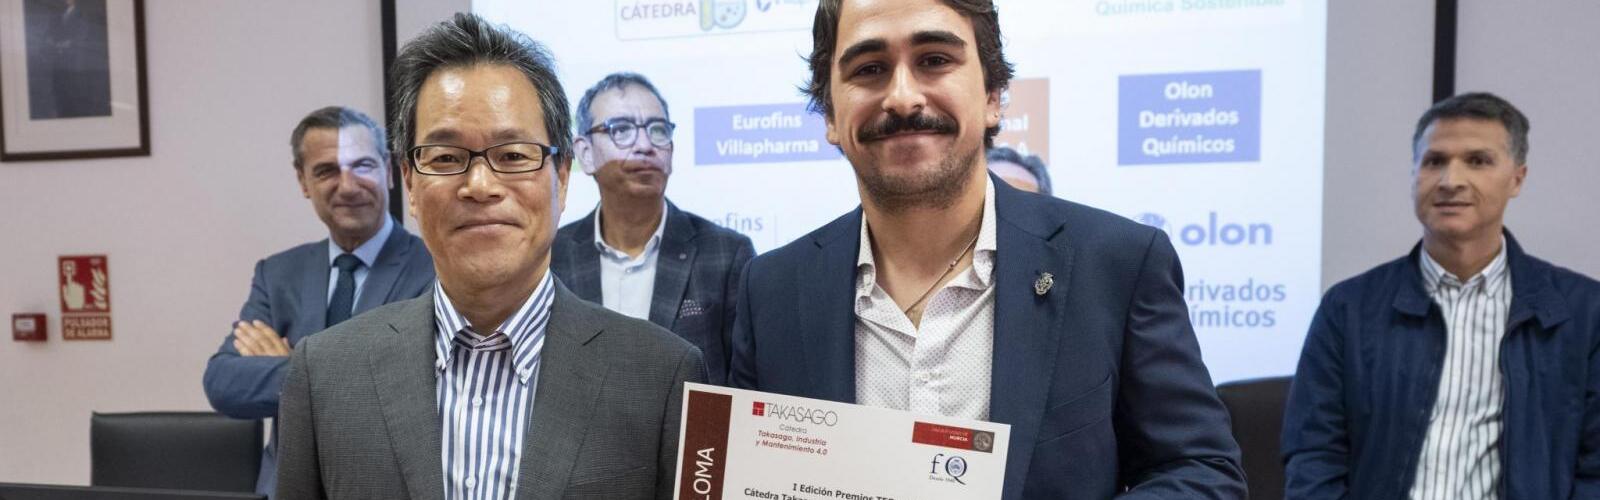 Las cátedras de la Facultad de Química entregan sus premios por San Alberto